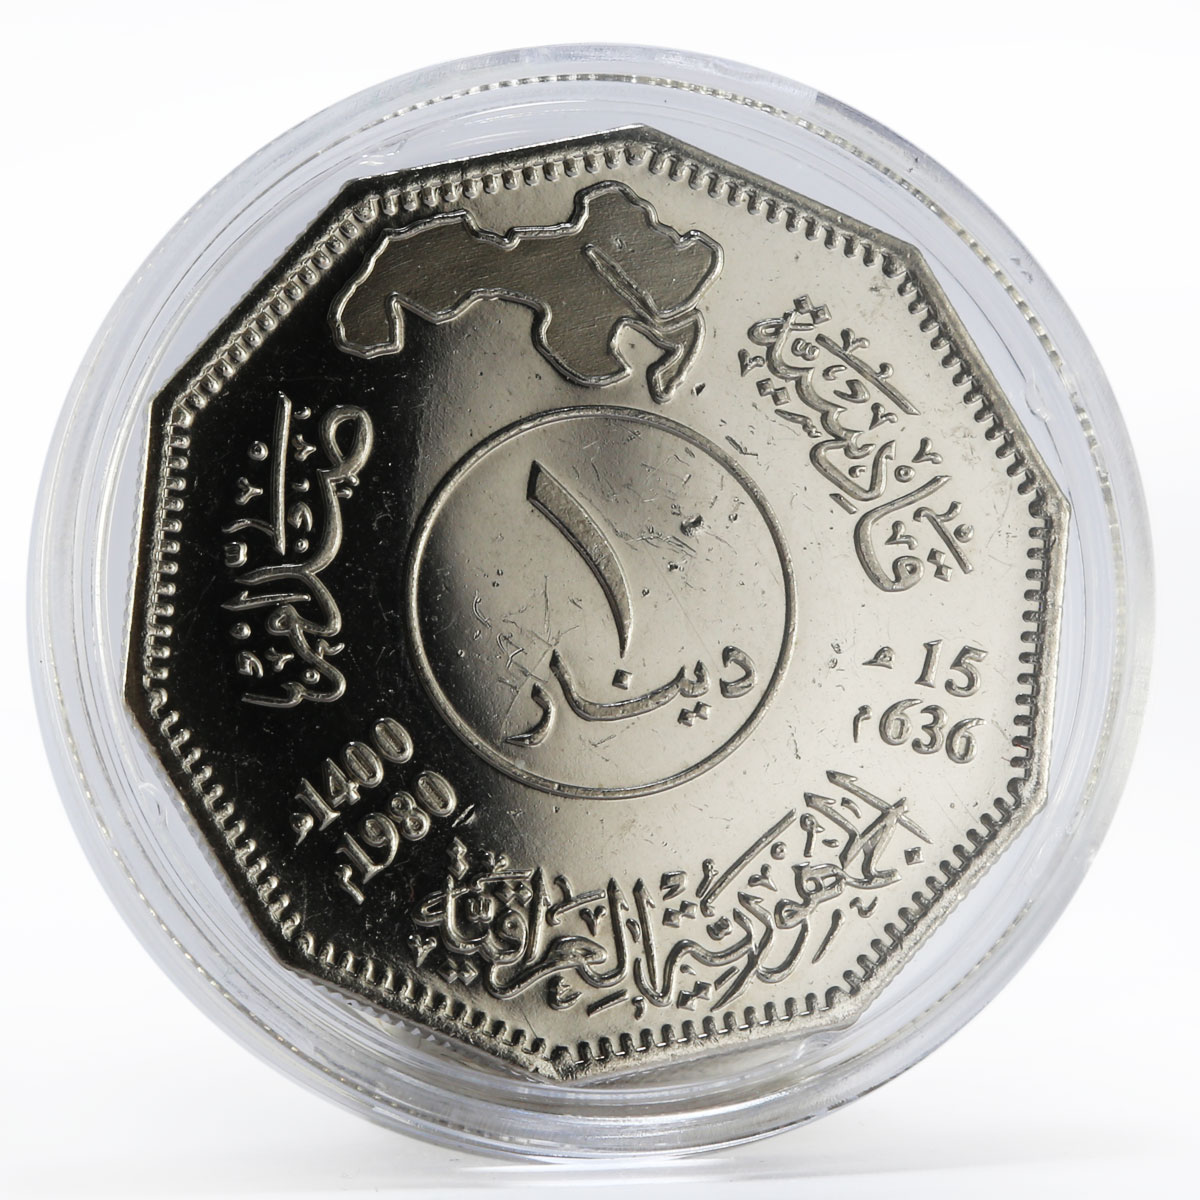 Iraq 1 dinar Battle of Qadissyiat nickel coin 1980